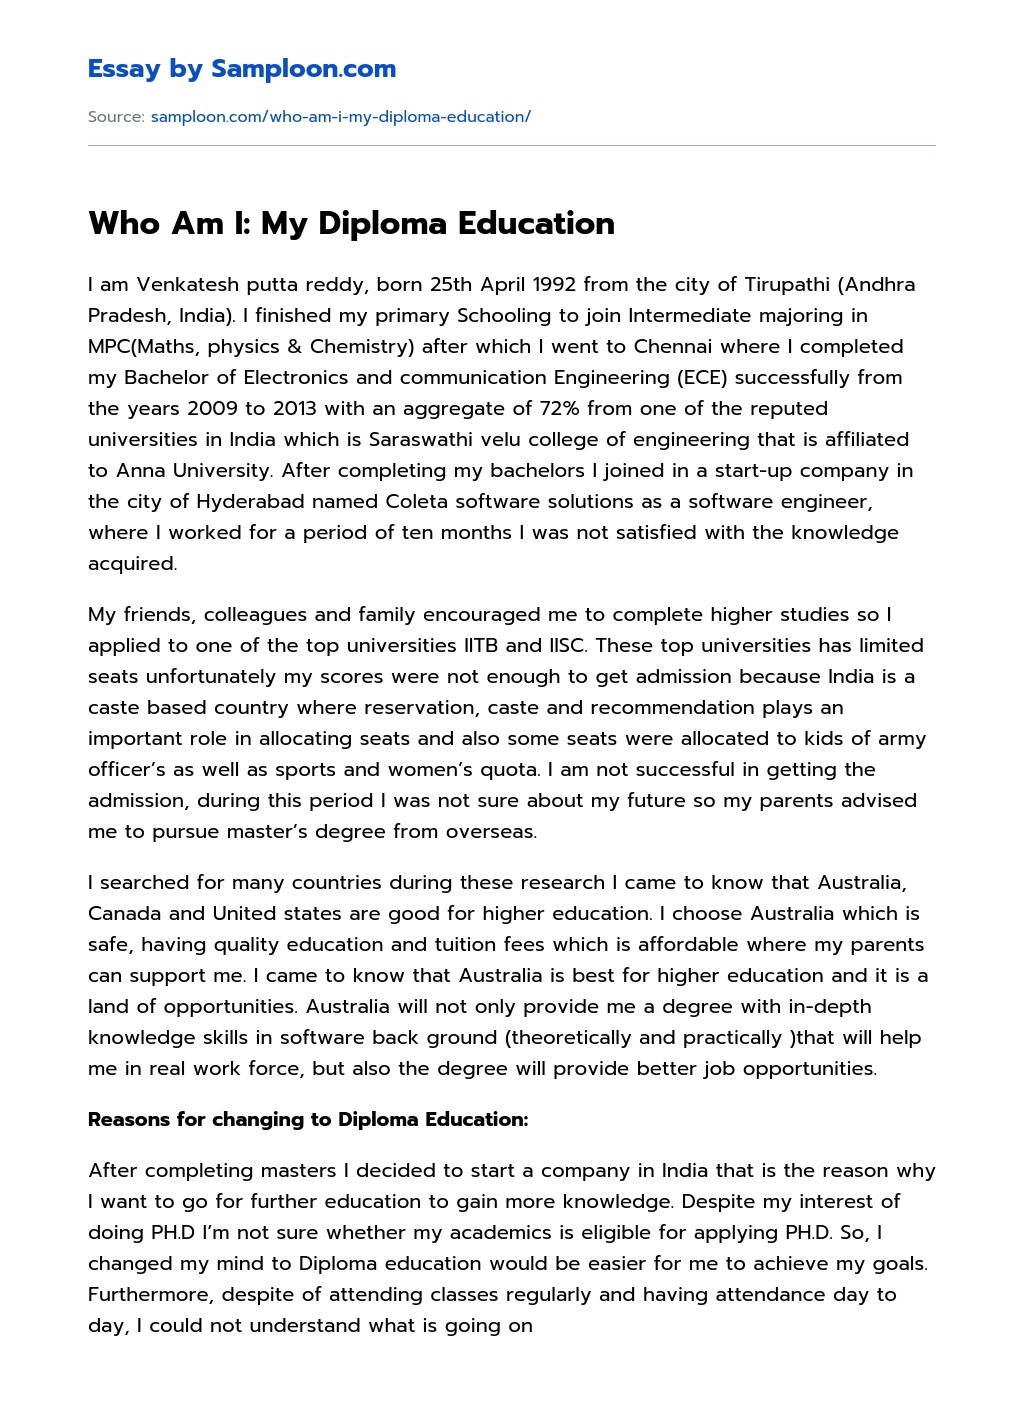 Who Am I: My Diploma Education essay